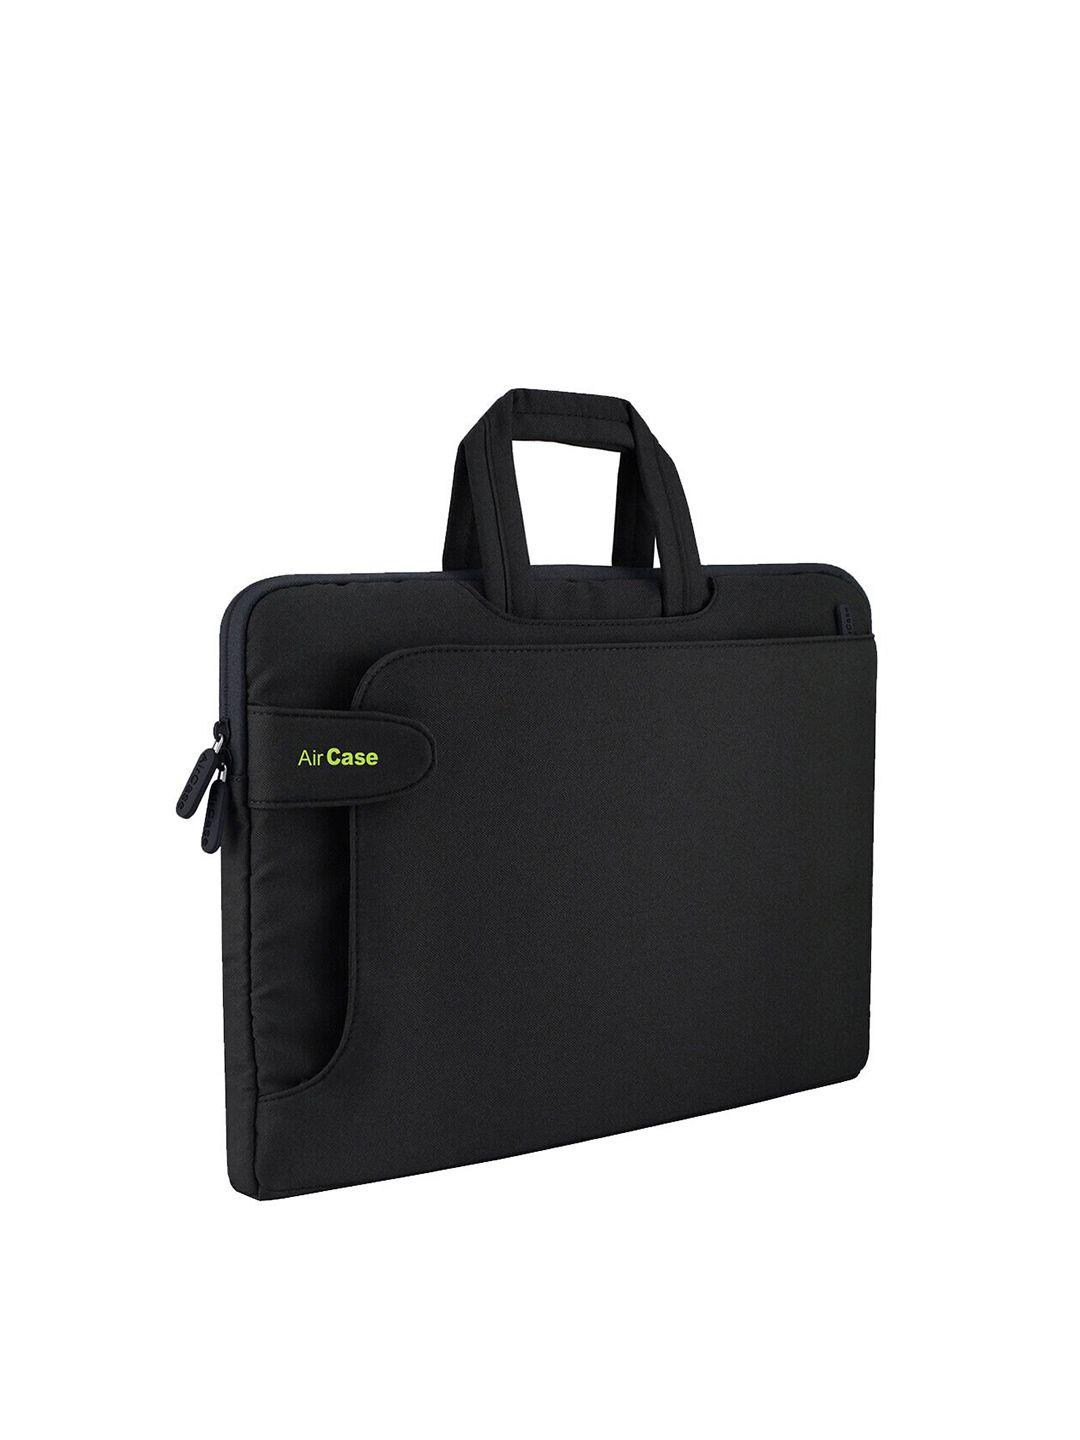 aircase unisex black 14 inch laptop bag with handles & detachable shoulder strap